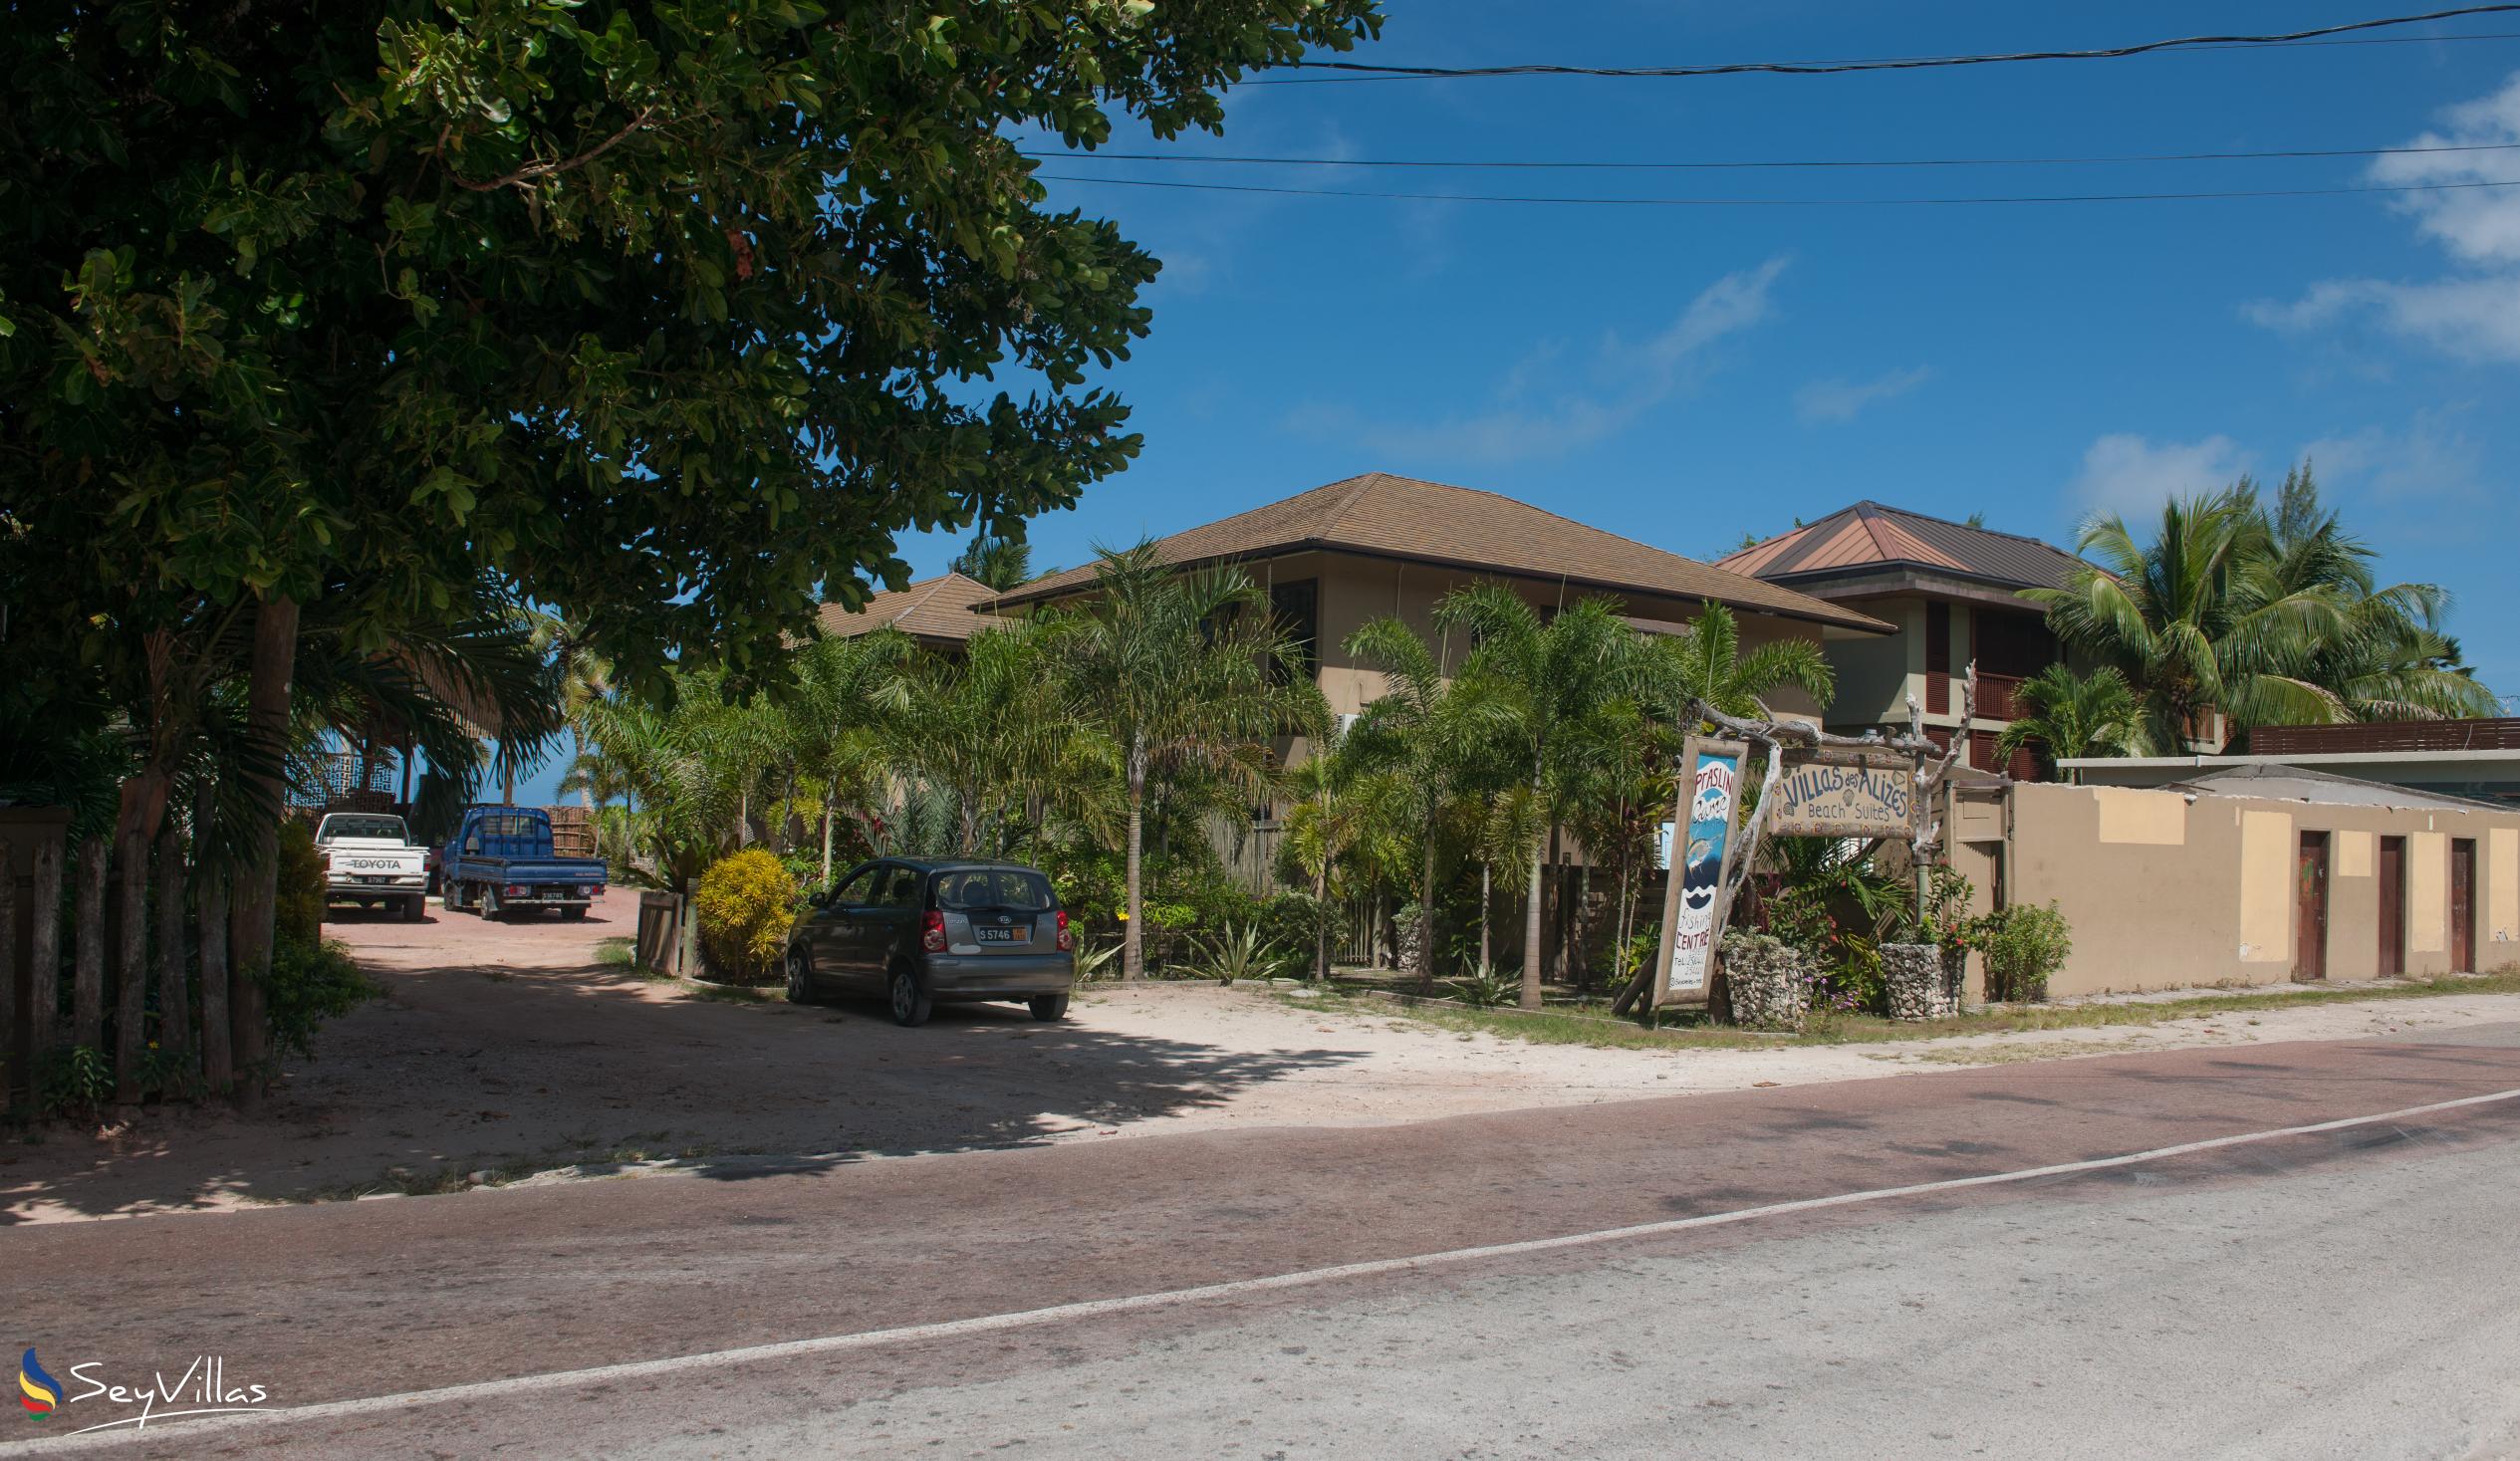 Foto 3: Villas des Alizes - Aussenbereich - Praslin (Seychellen)